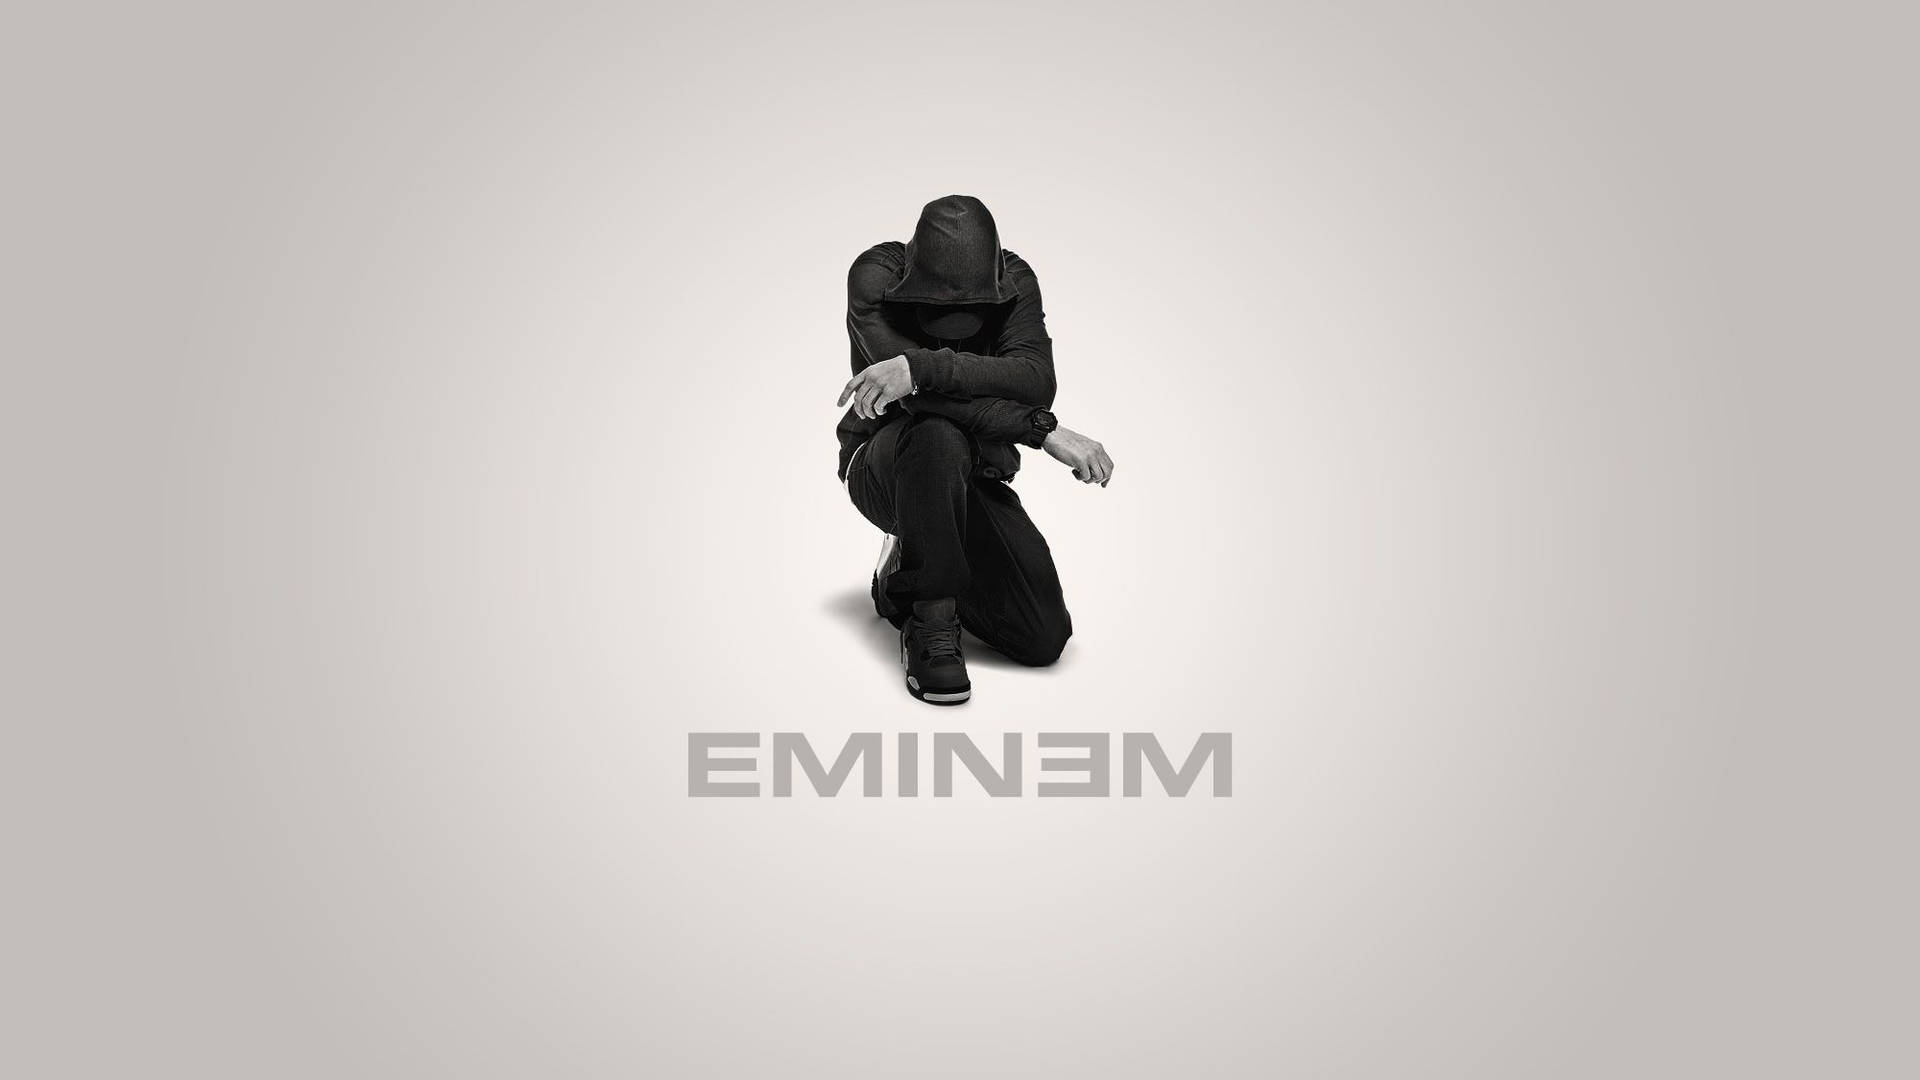 Kneeling Eminem In Black